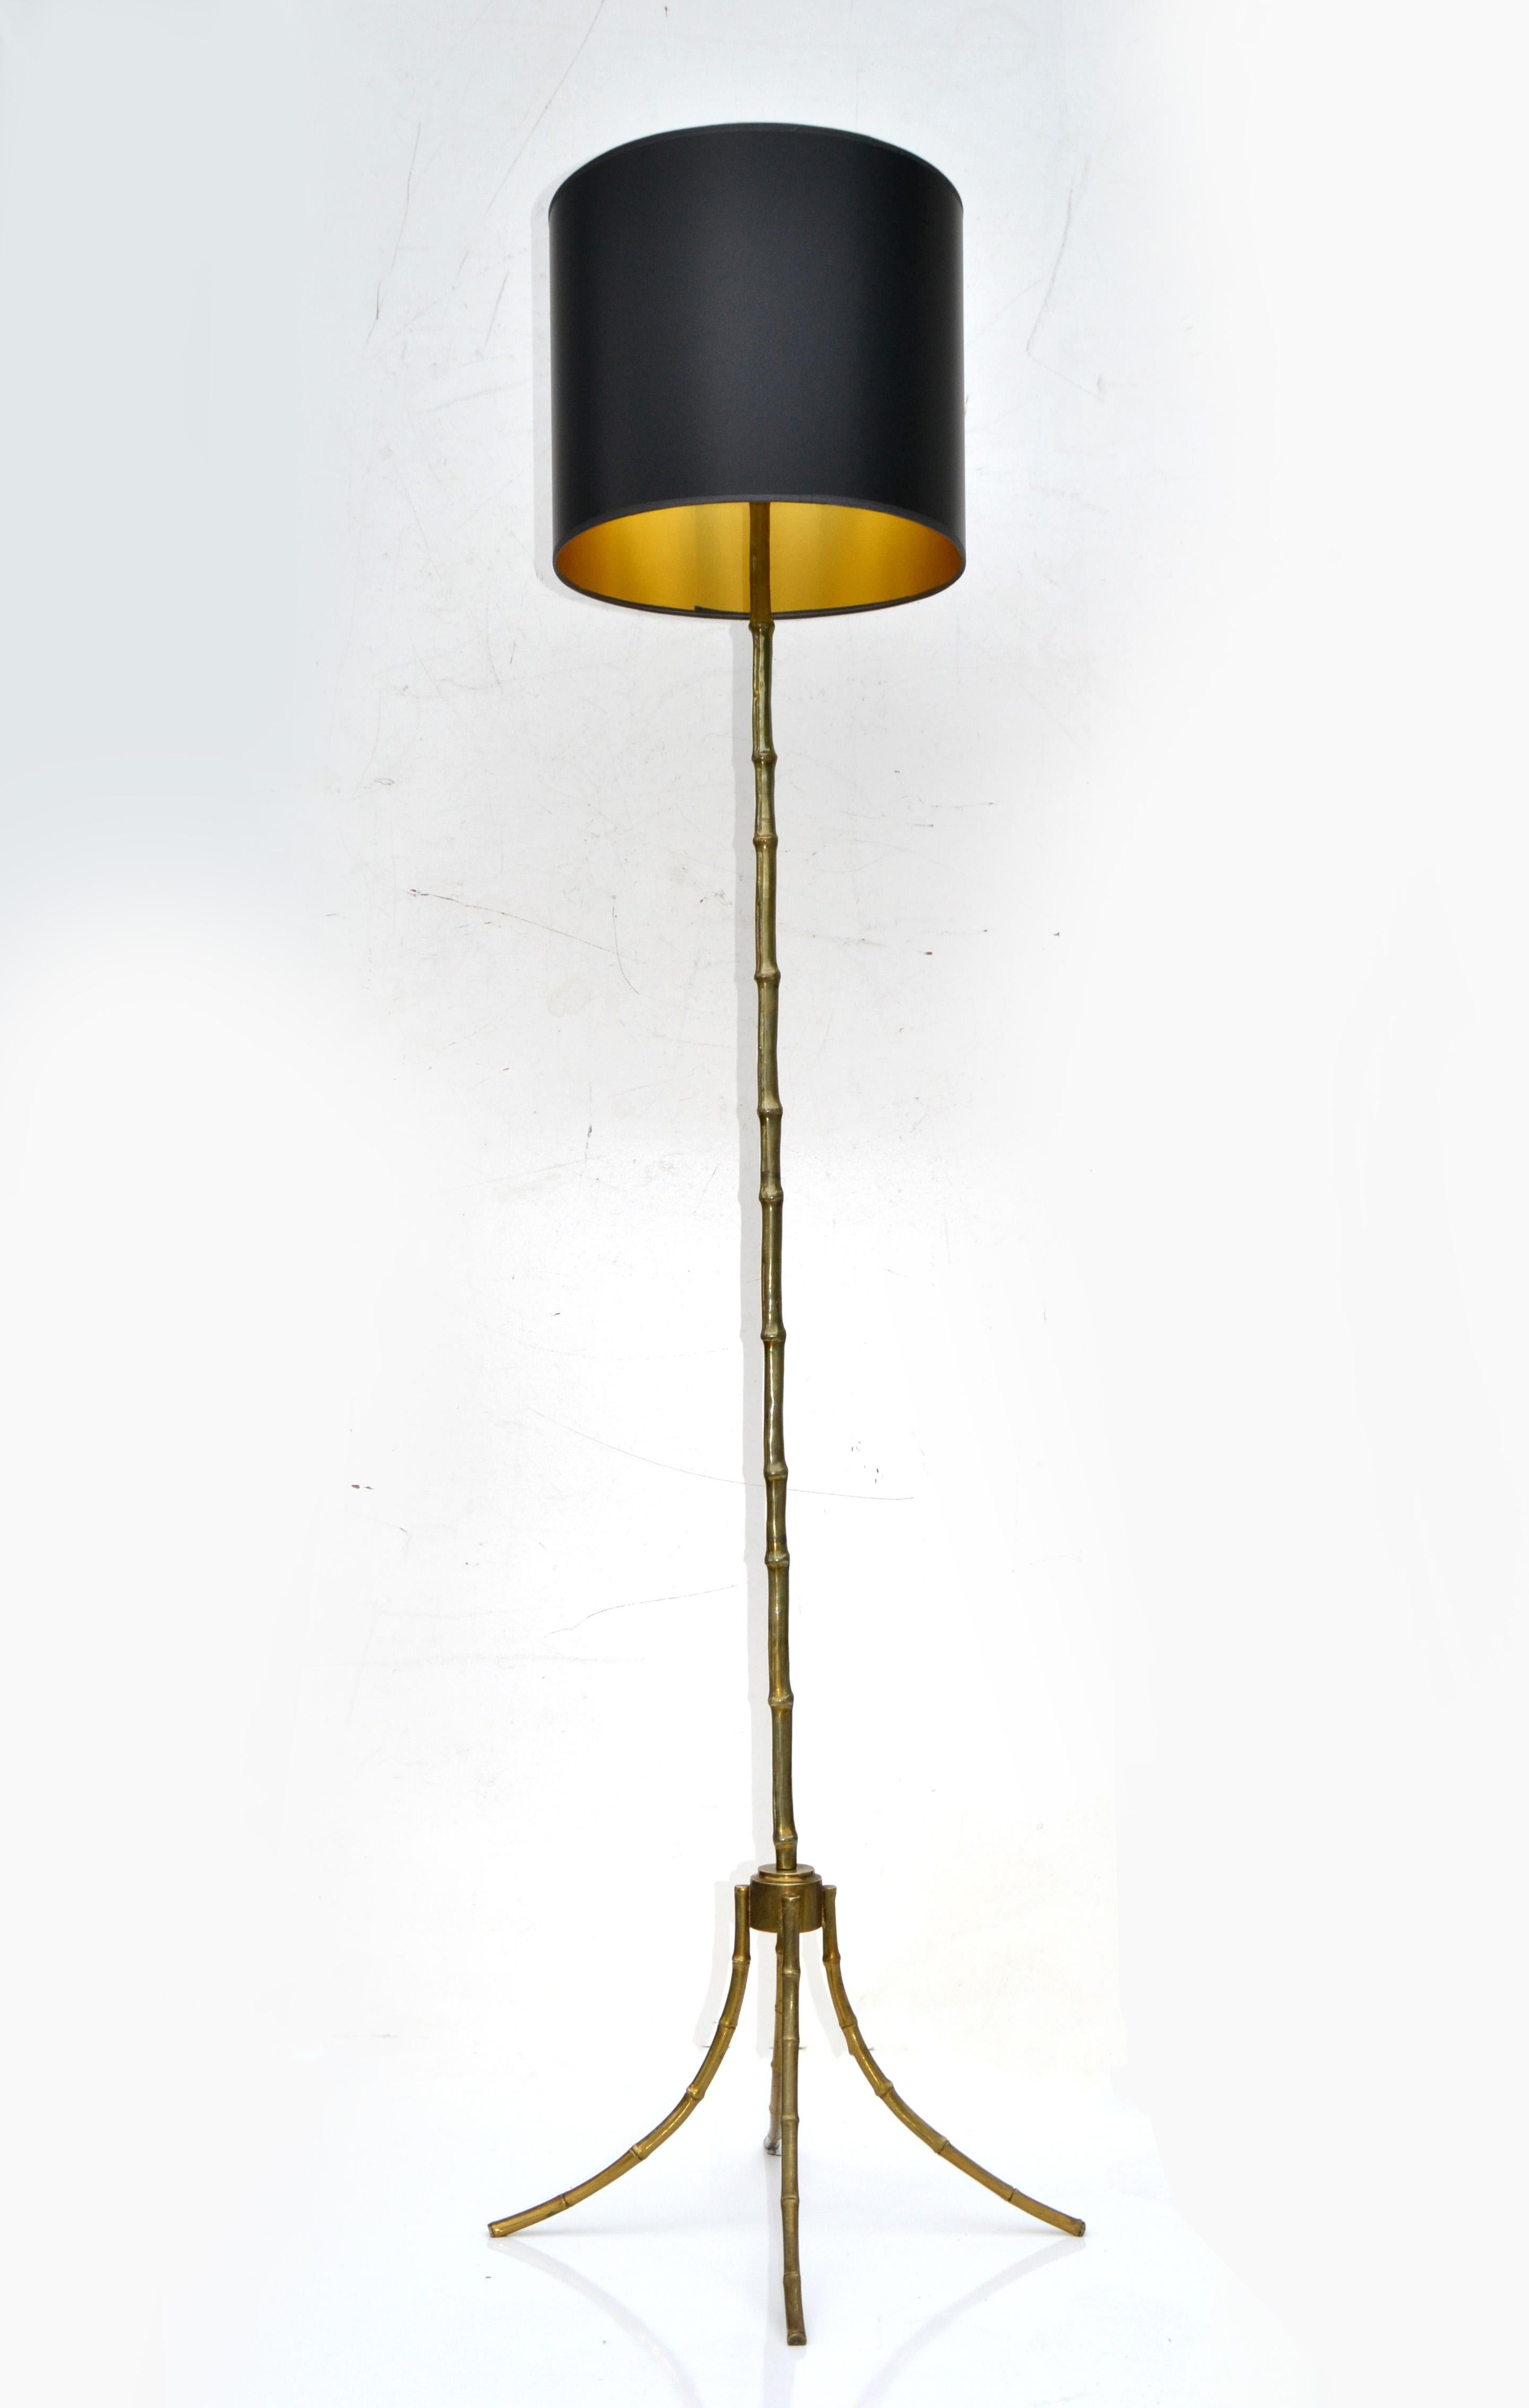 Lampadaire de la Maison Bagus en bronze massif et faux bambou très lourd, de haute qualité.
Lampe néoclassique française fabriquée en 1950.
Recâblée et en état de marche aux États-Unis, chaque lampe nécessite une douille de 100 watts maximum ou